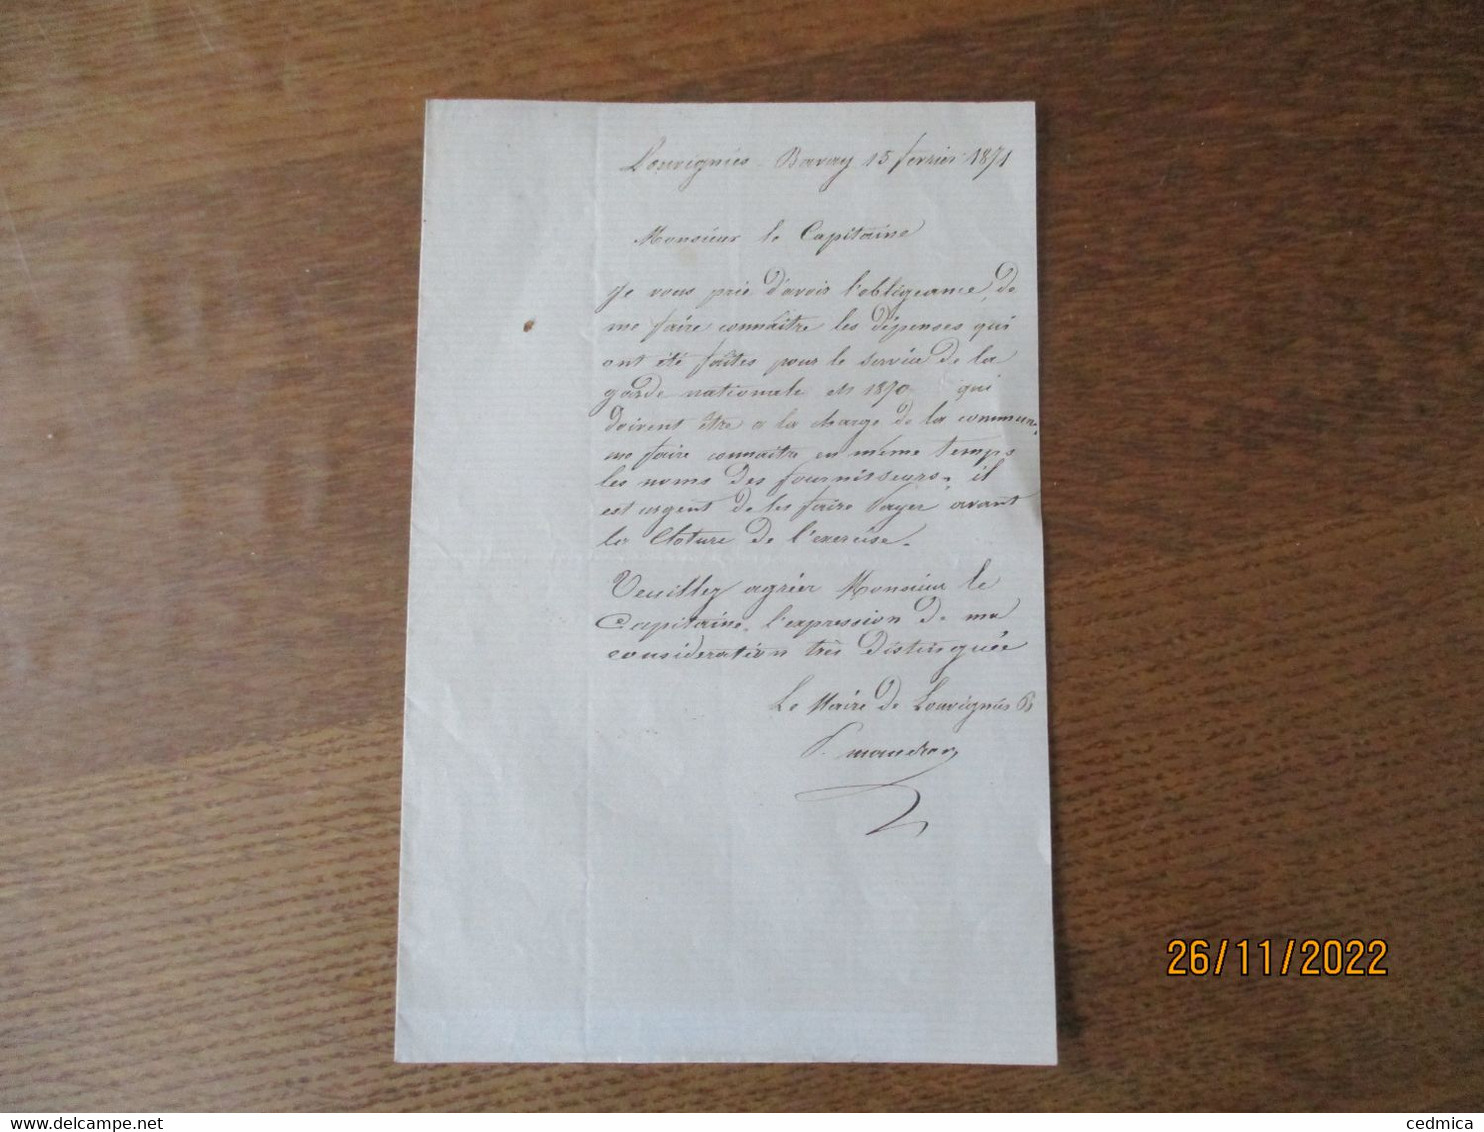 15 FEVRIER 1871 LOUVIGNIES BAVAY COURRIER LE MAIRE A MONSIEUR LE CAPITAINE - Manuscripts